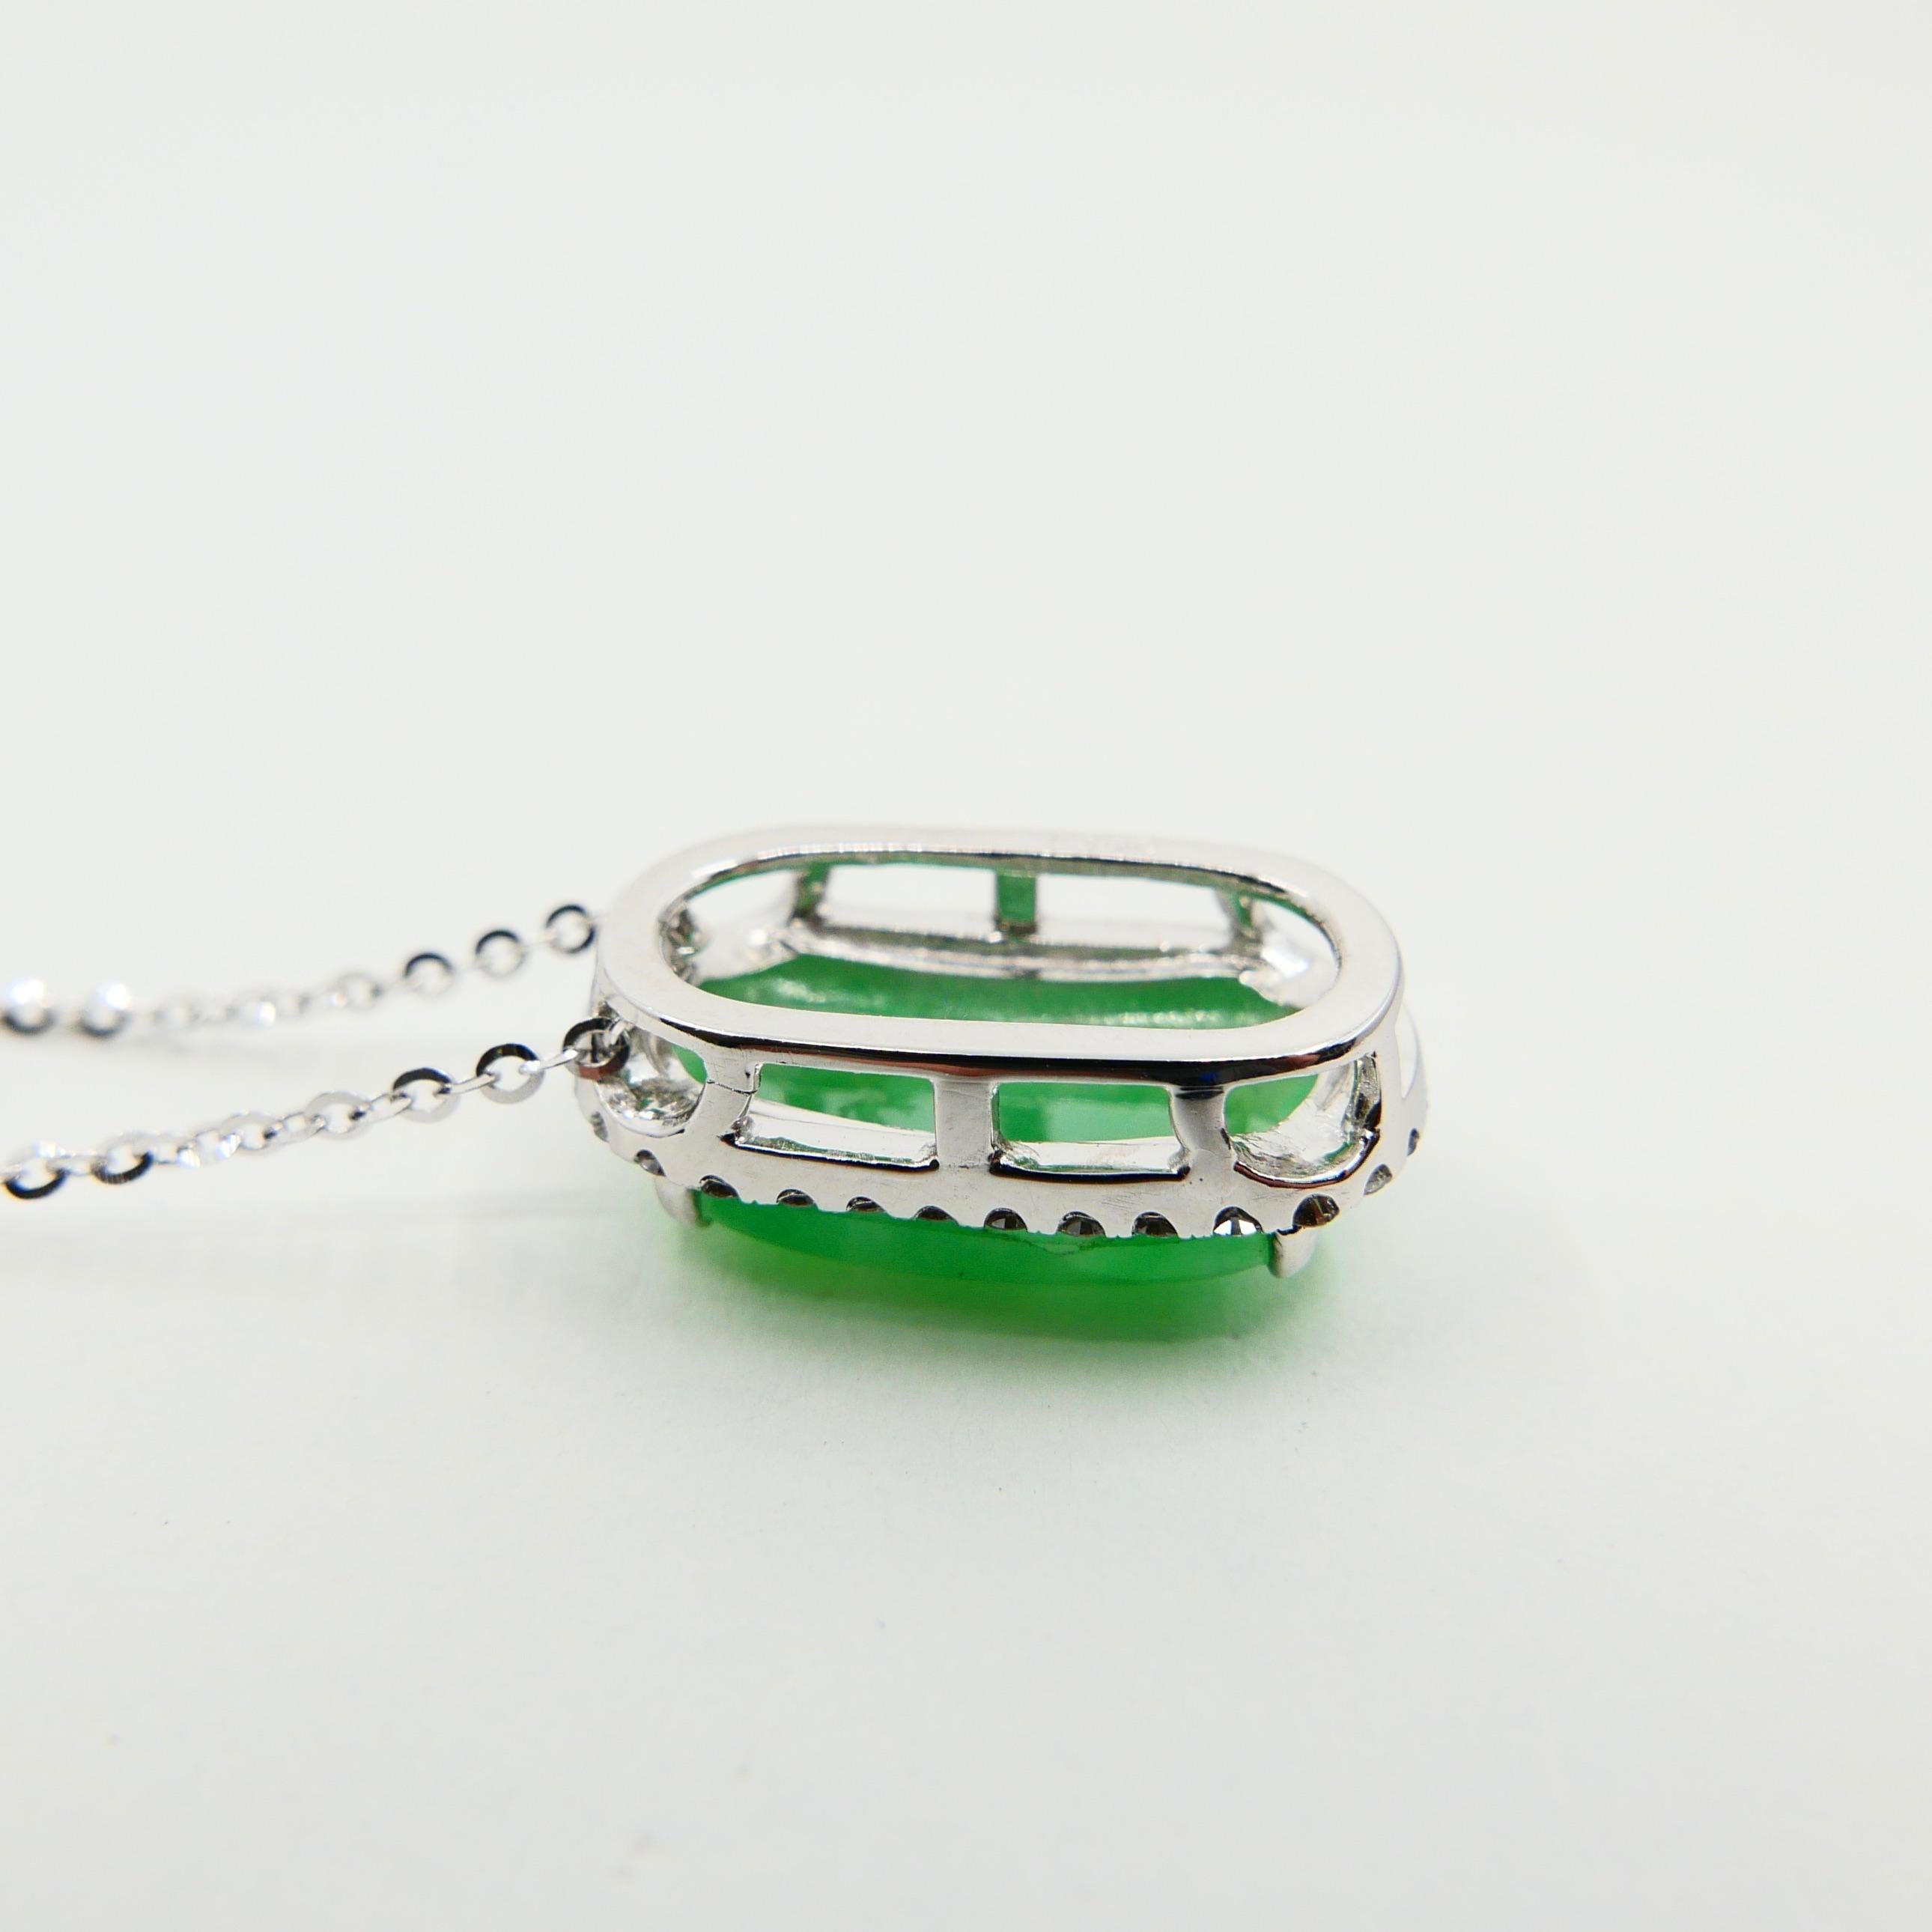 Certified Type A Jadeite Jade Diamond Pendant Drop Necklace, Apple Green Color For Sale 2